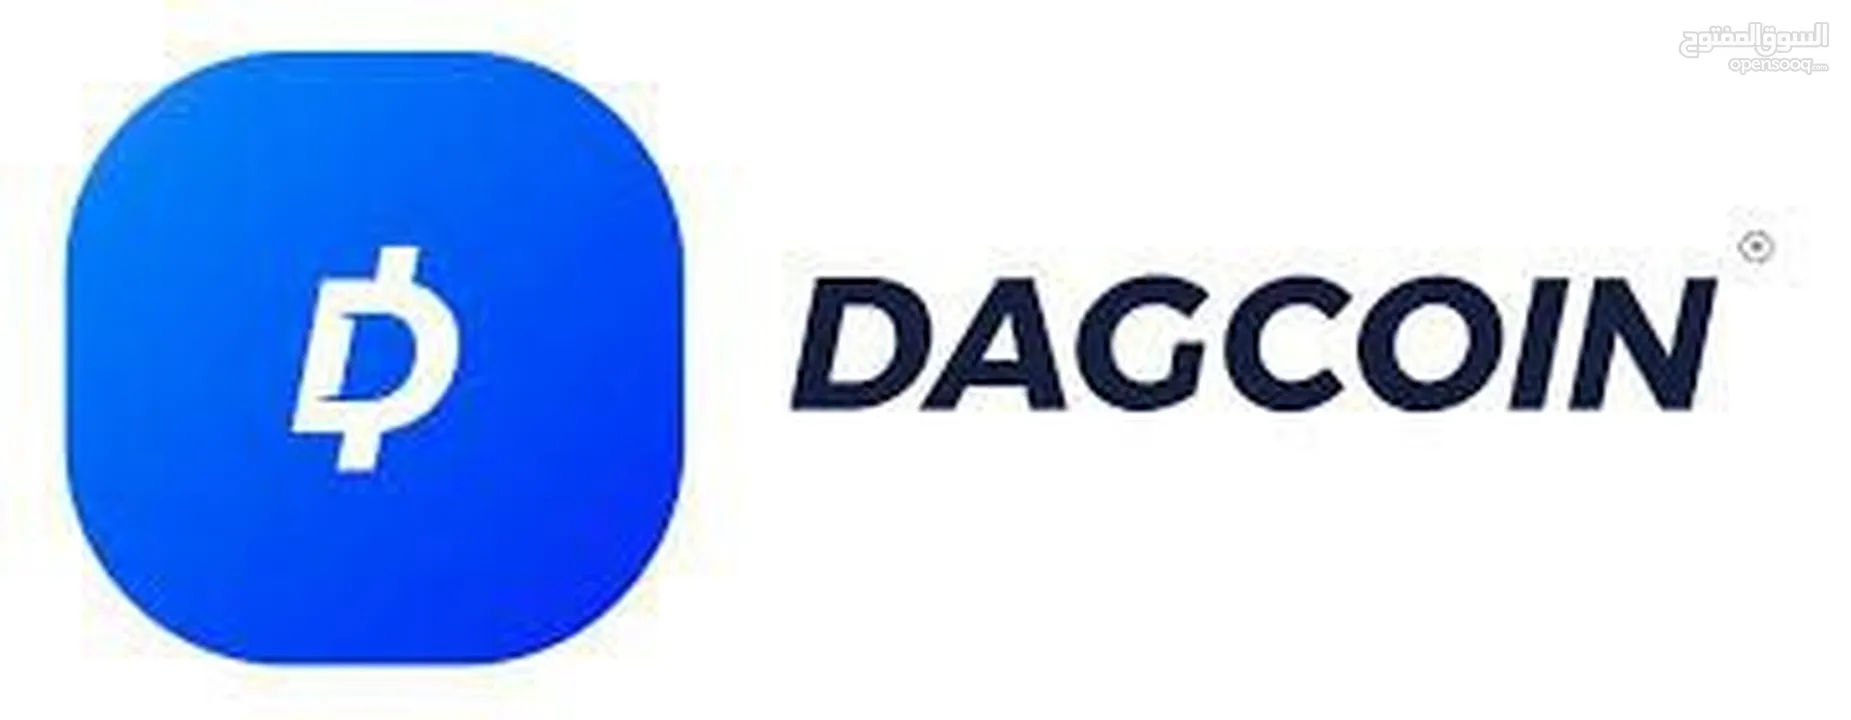 عمله dagcoin الاستثمار الأمن - Opensooq